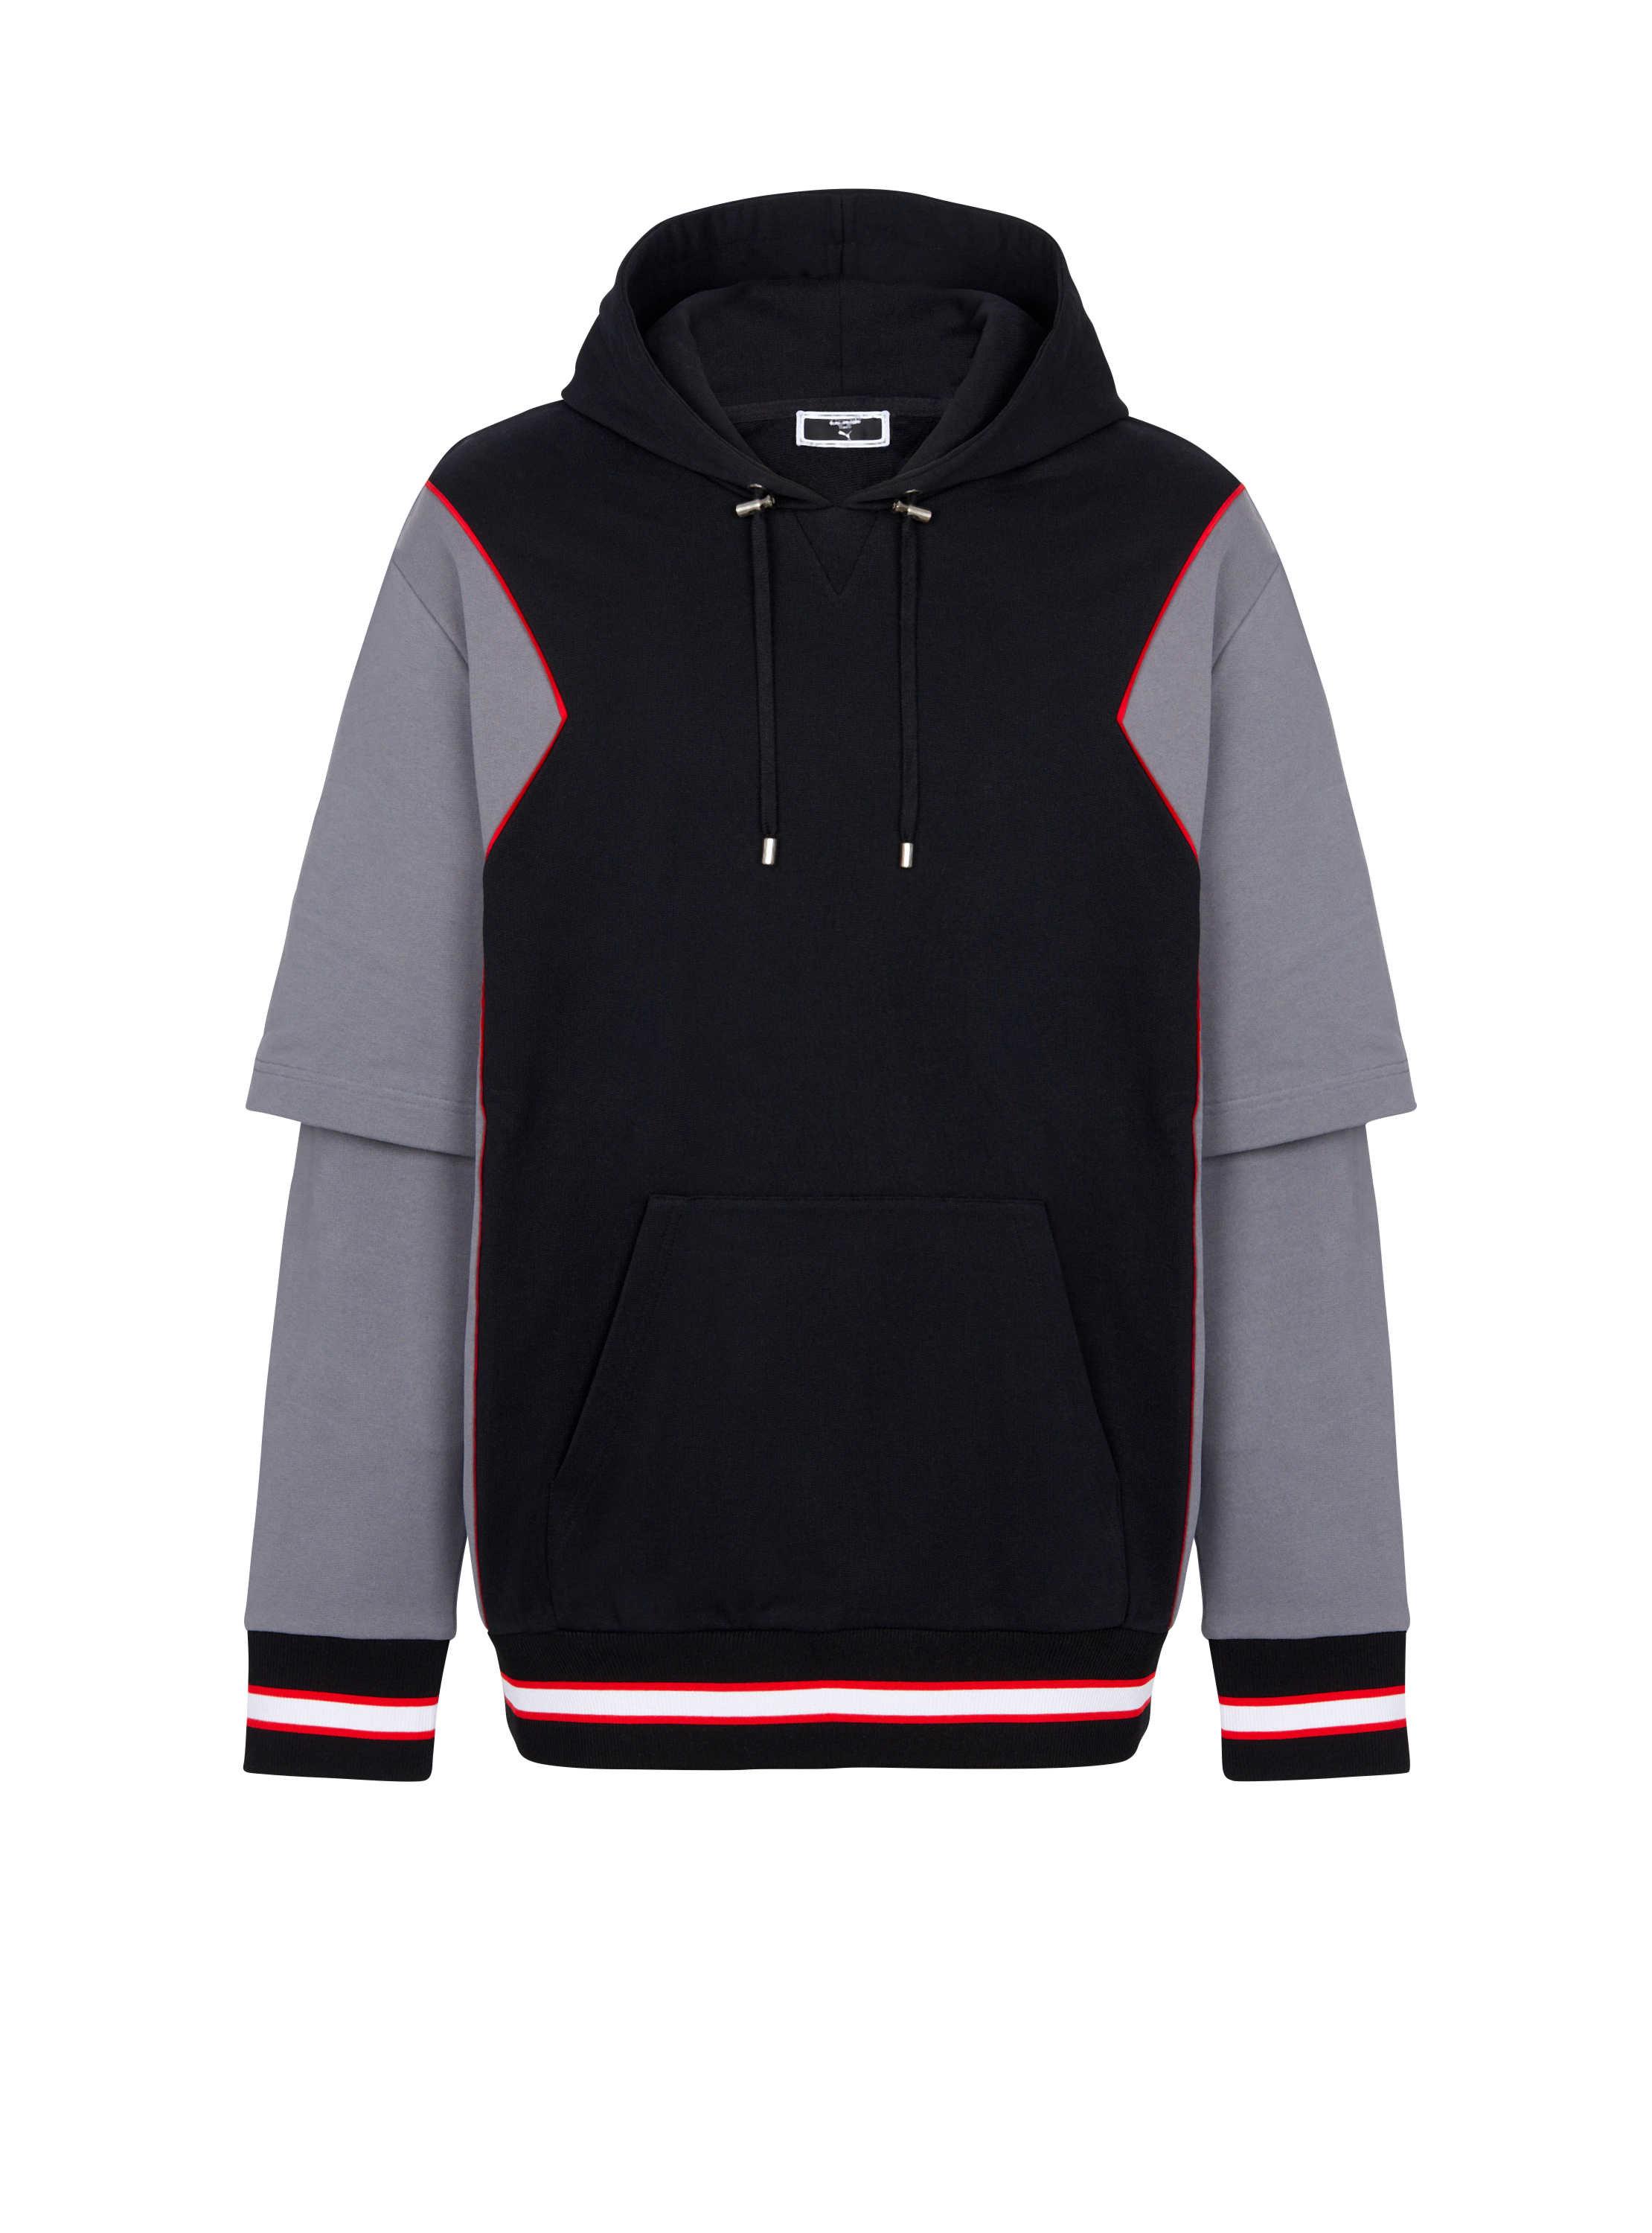 Balmain x Puma – Oversize-Kapuzensweatshirt, schwarz, hi-res